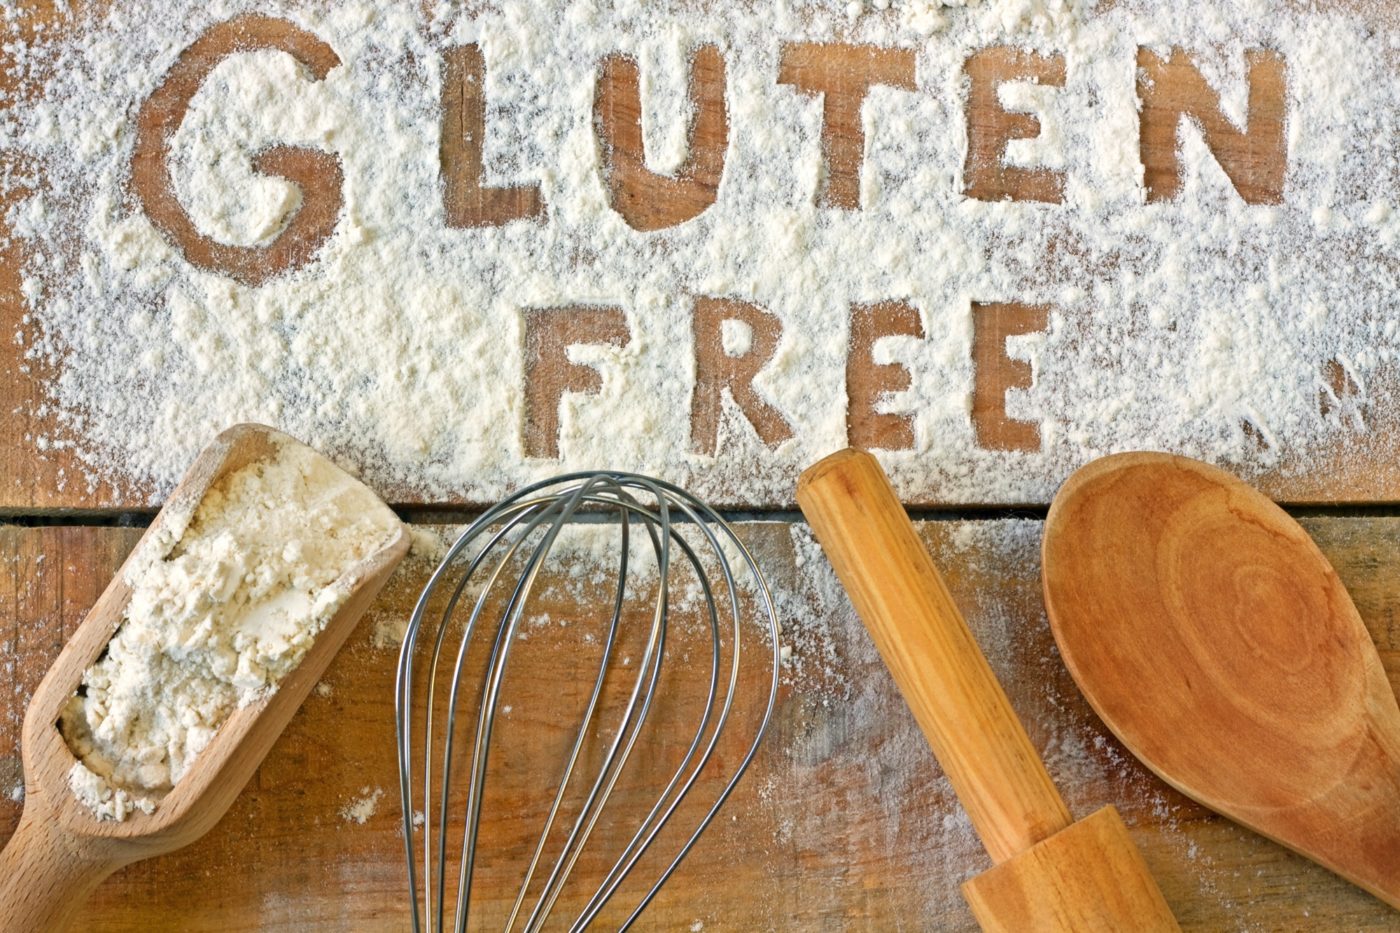 attrezzature da cucina su un piano di legno infarinato e la scritta gluten free